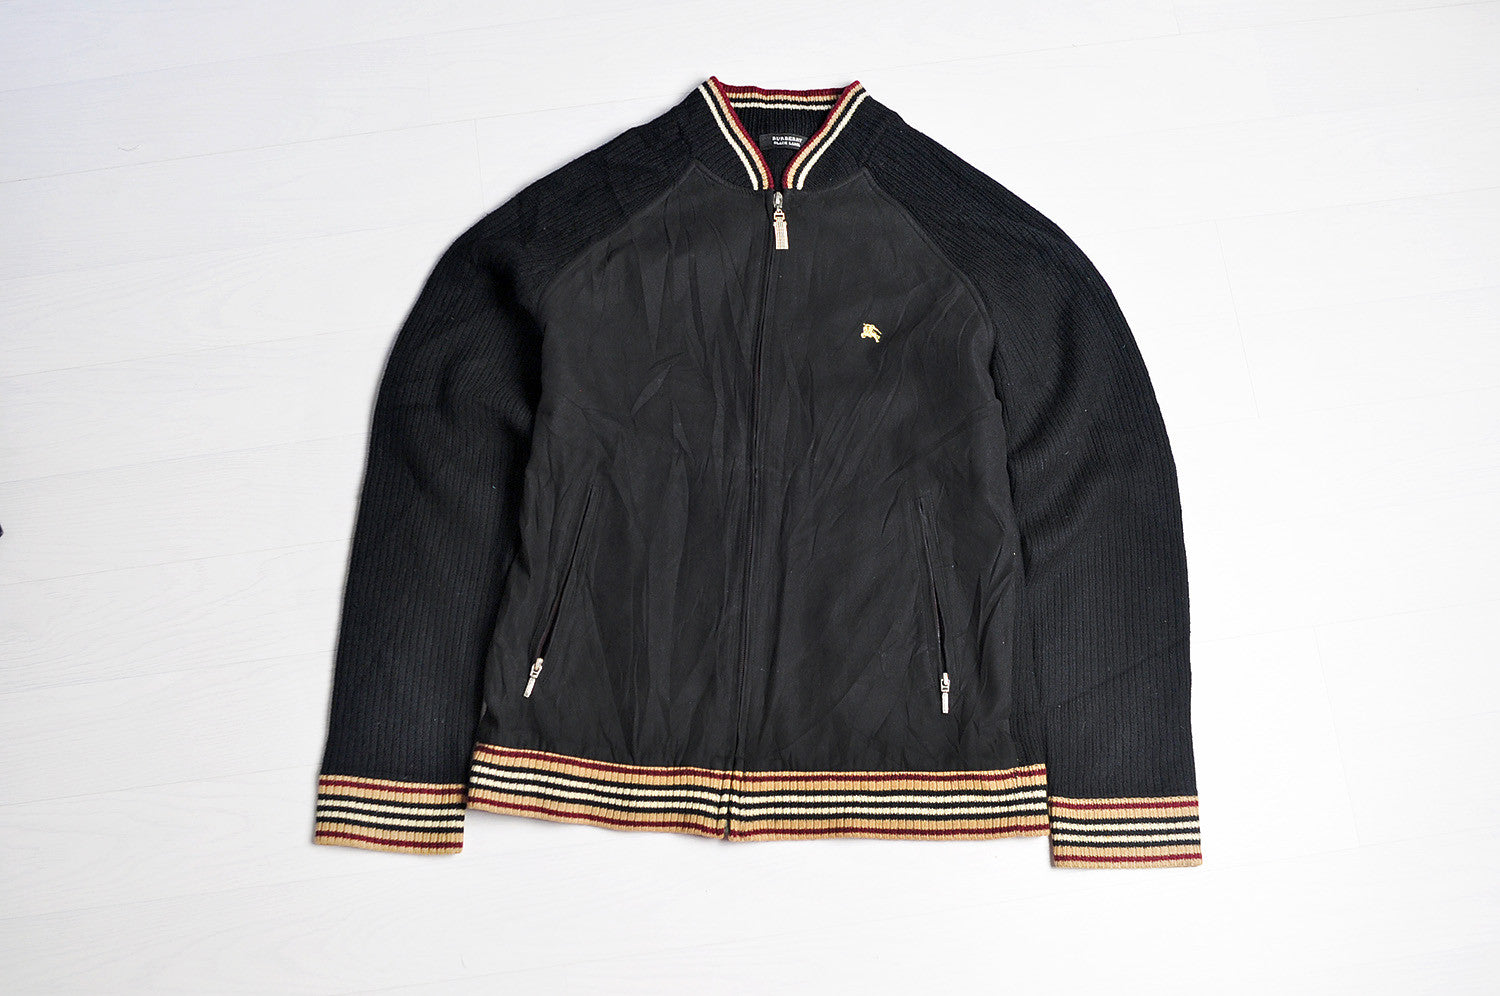 Vintage Burberry (Black Label) Raglan Half Knitted Bomber Jacket